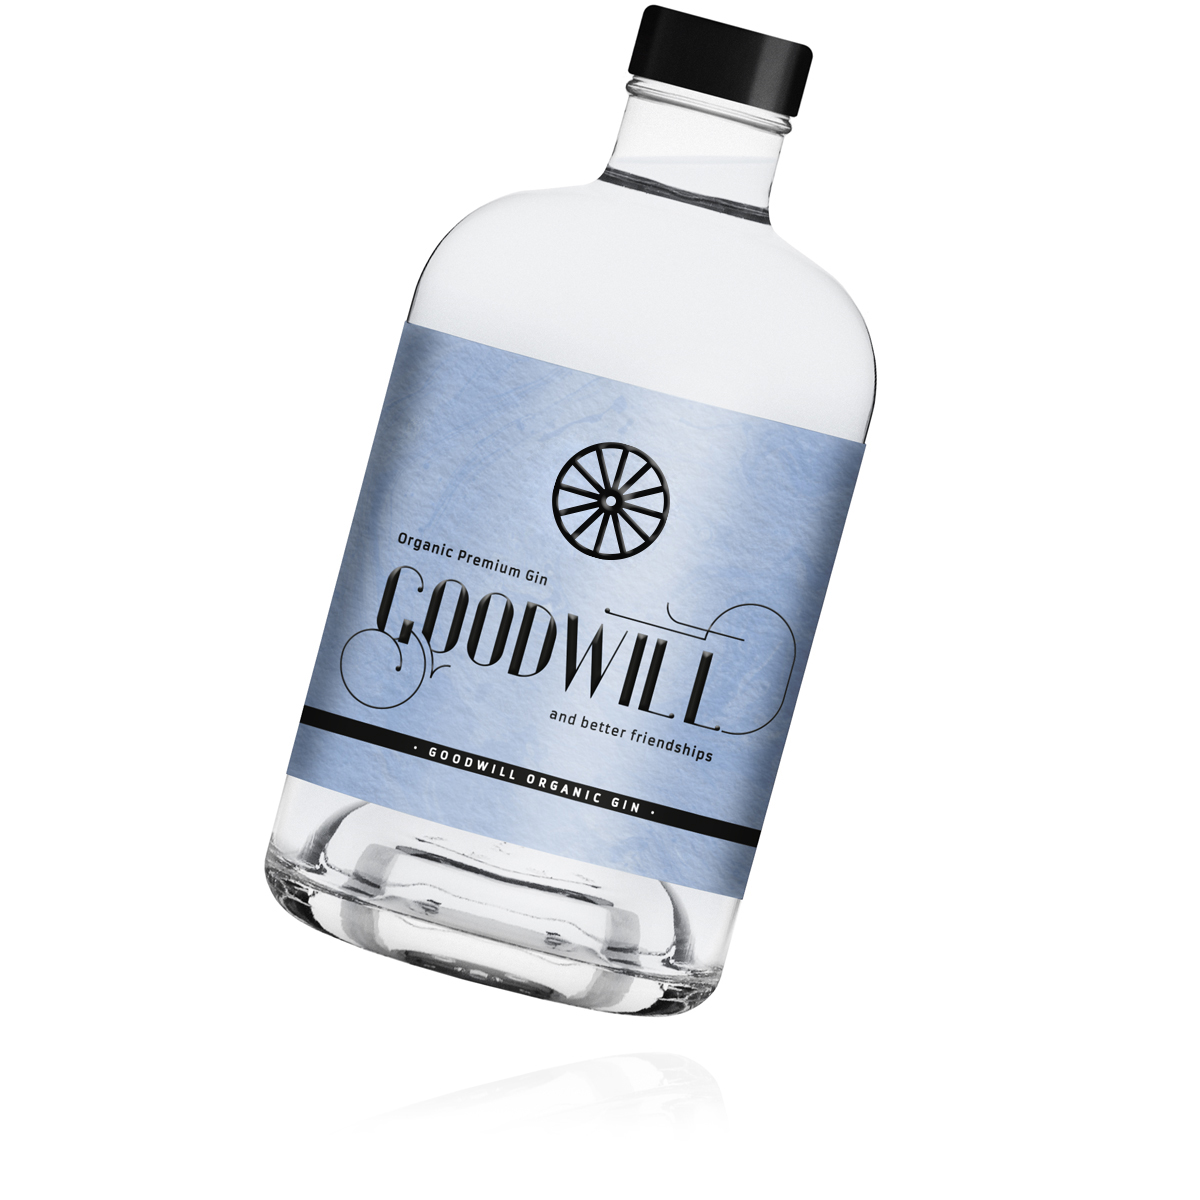 Flasche Goodwill Organic Gin - Goodwill Spirits